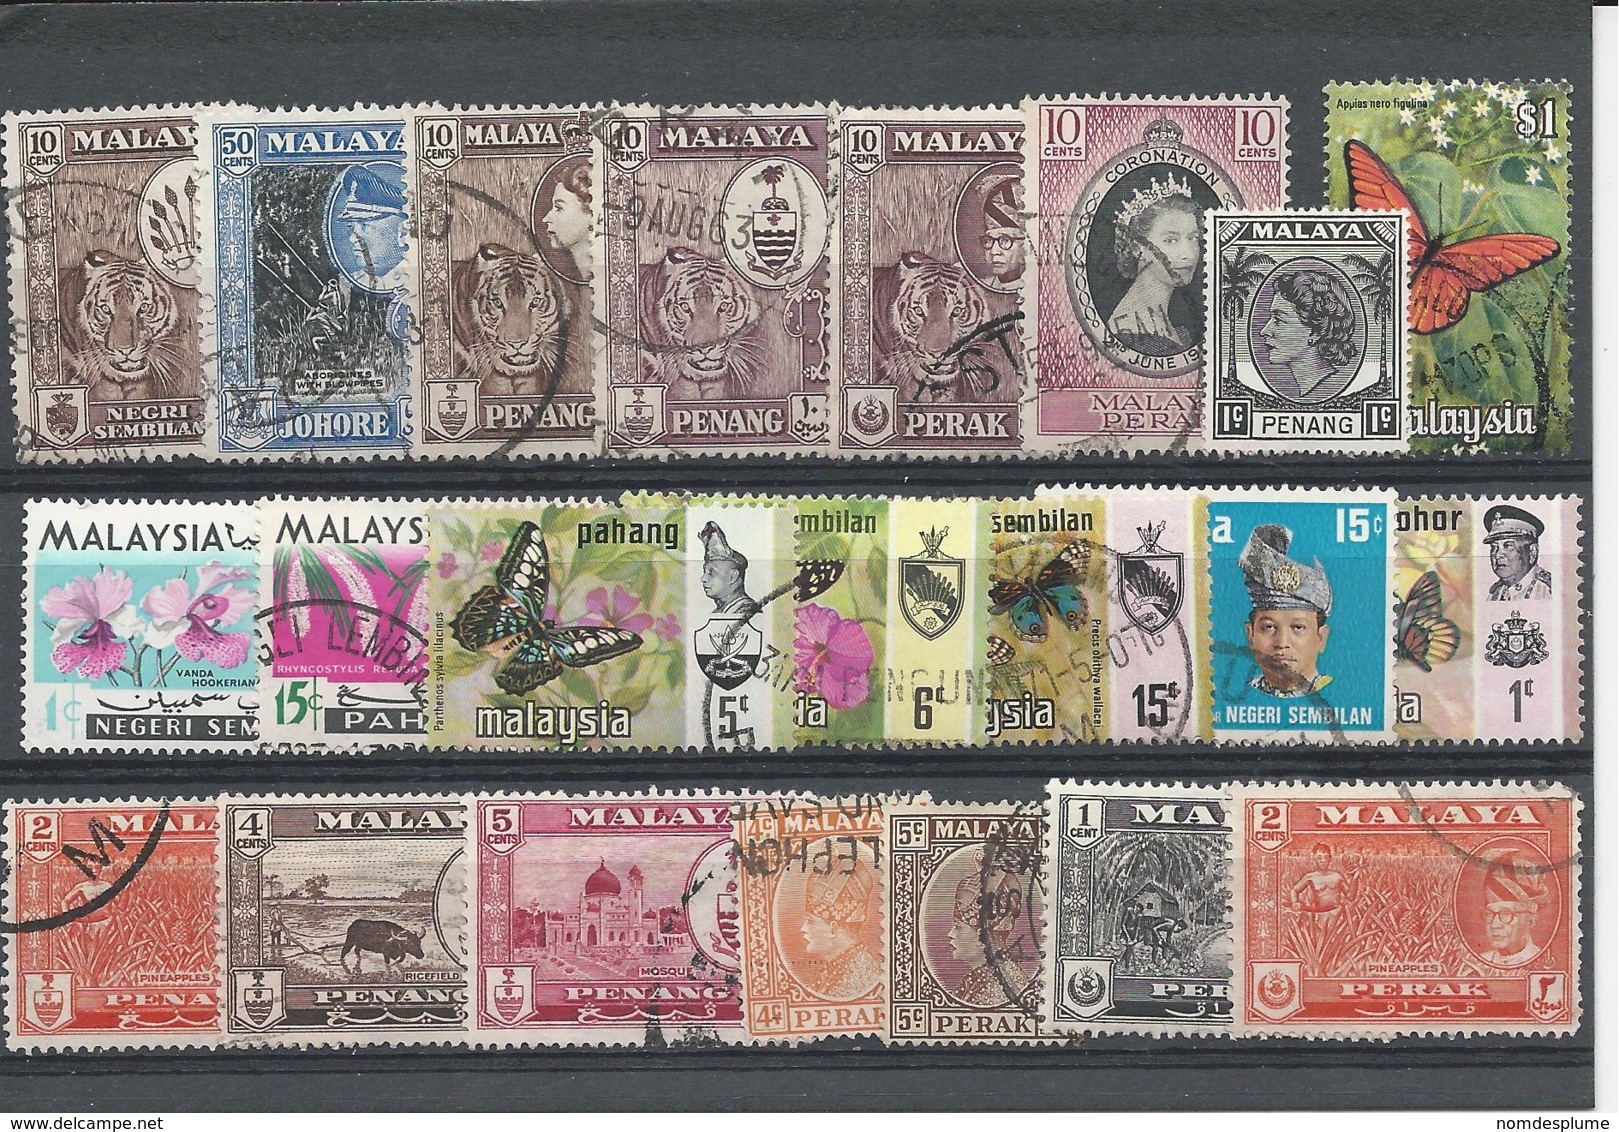 24902) Malaya Collection - Malayan Postal Union